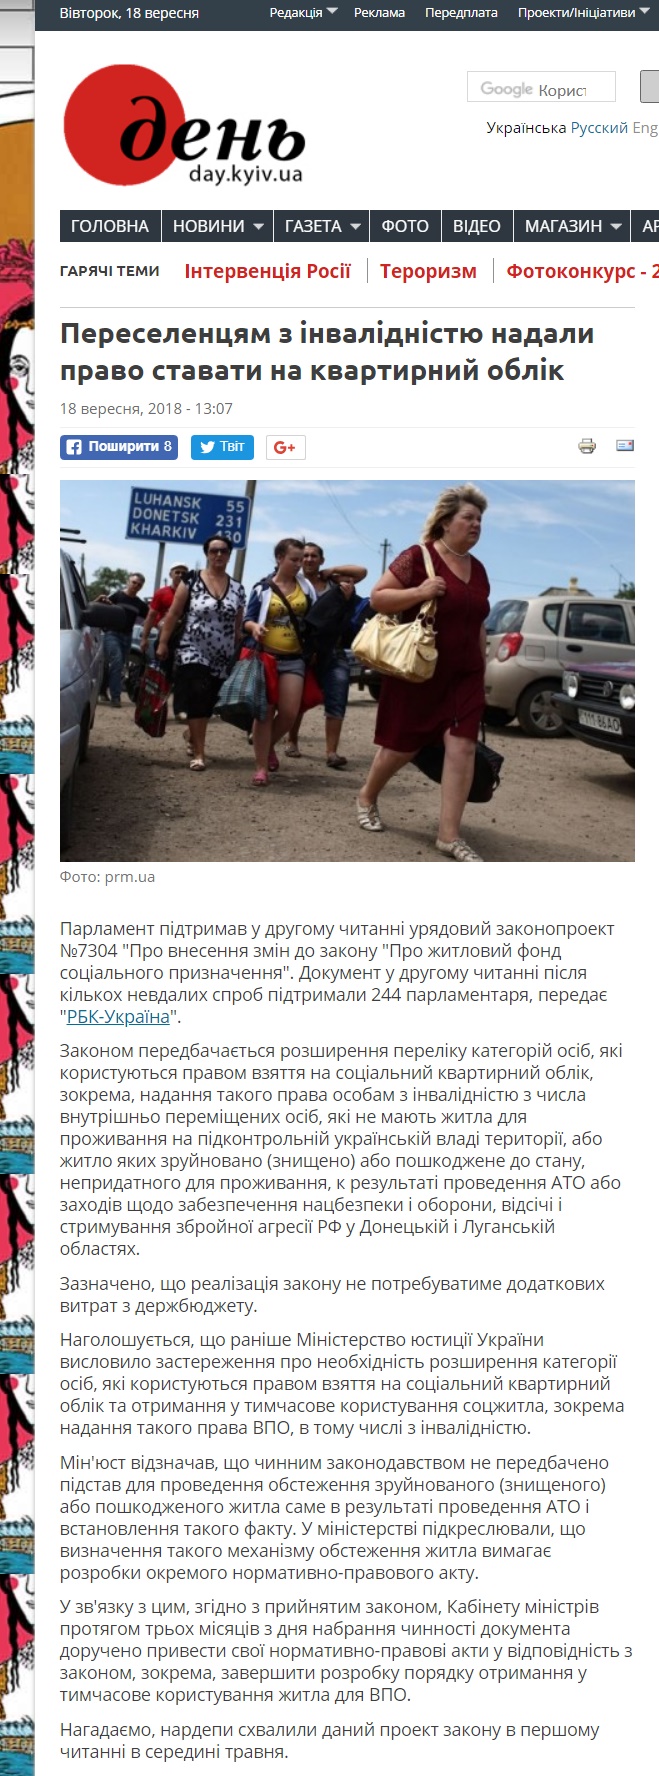 https://day.kyiv.ua/uk/news/180918-pereselencyam-z-invalidnistyu-nadaly-pravo-stavaty-na-kvartyrnyy-oblik